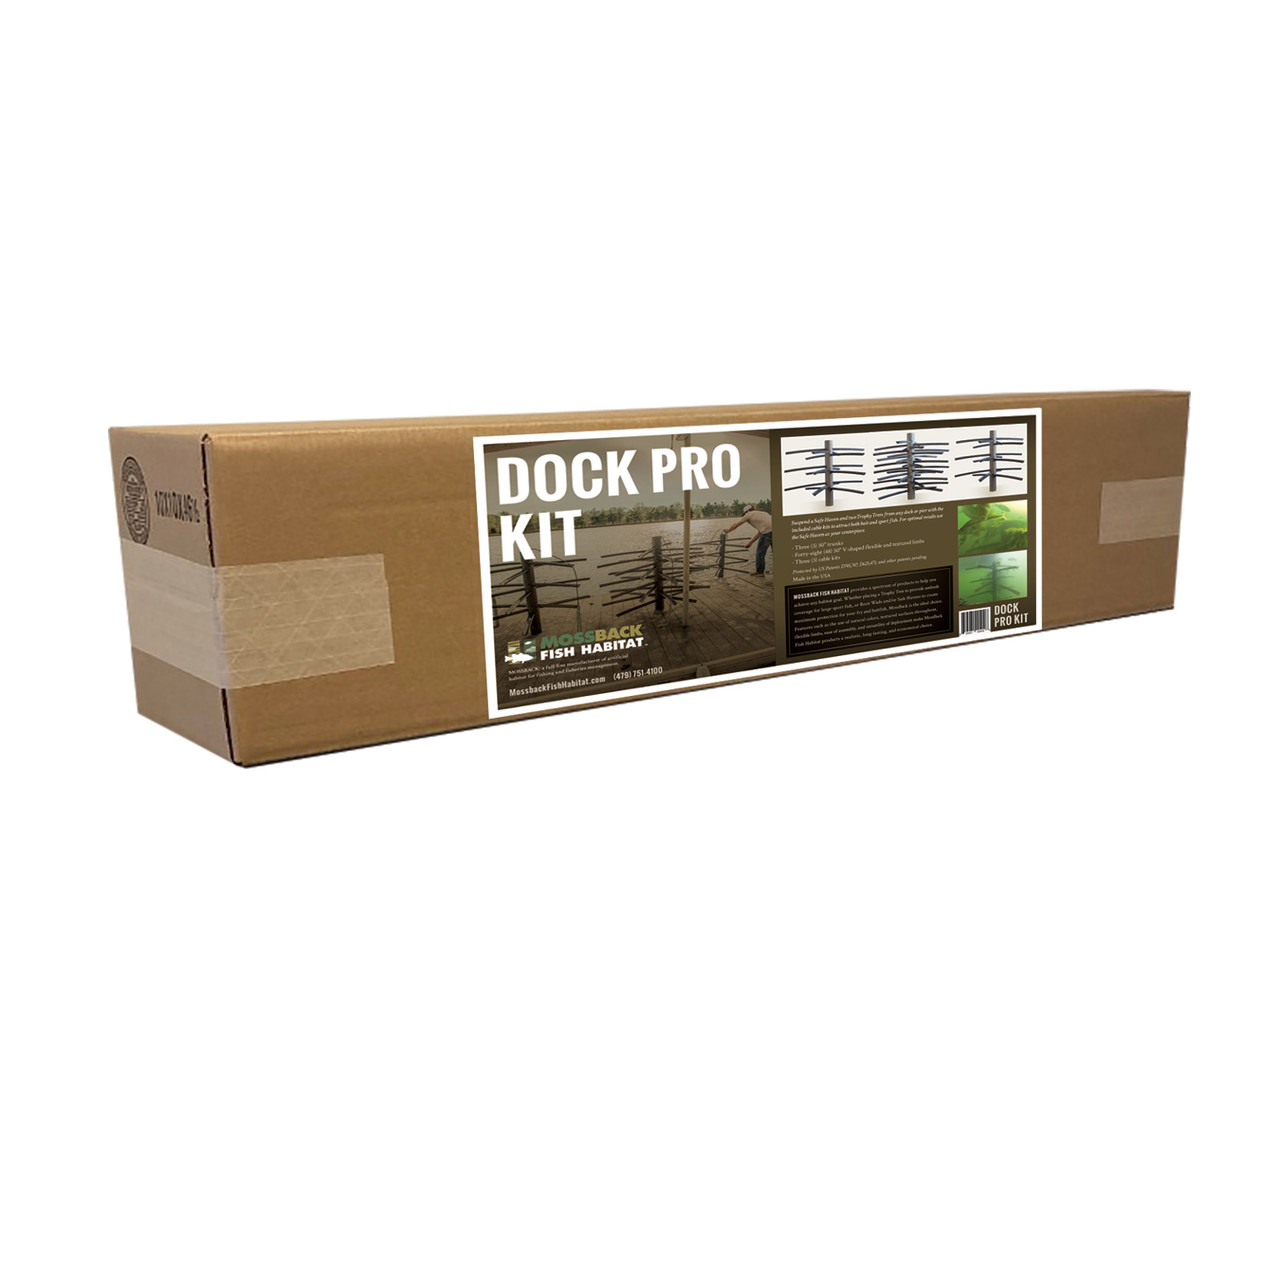 Dock Pro Kit box